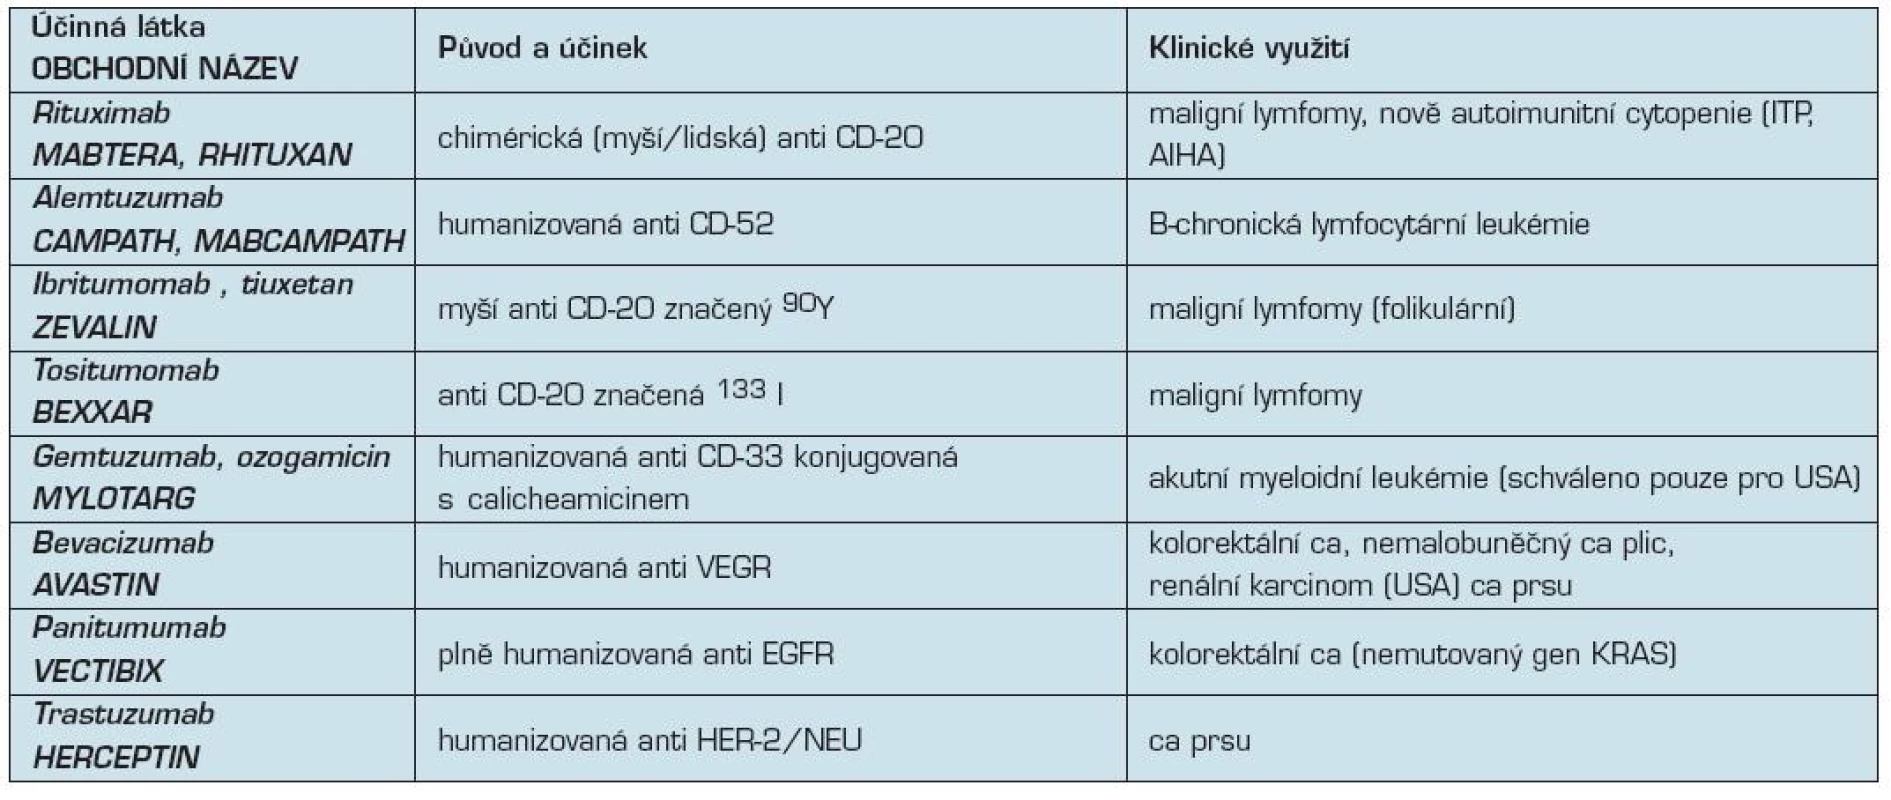 Přehled monoklonálních protilátek v klinické onkologii